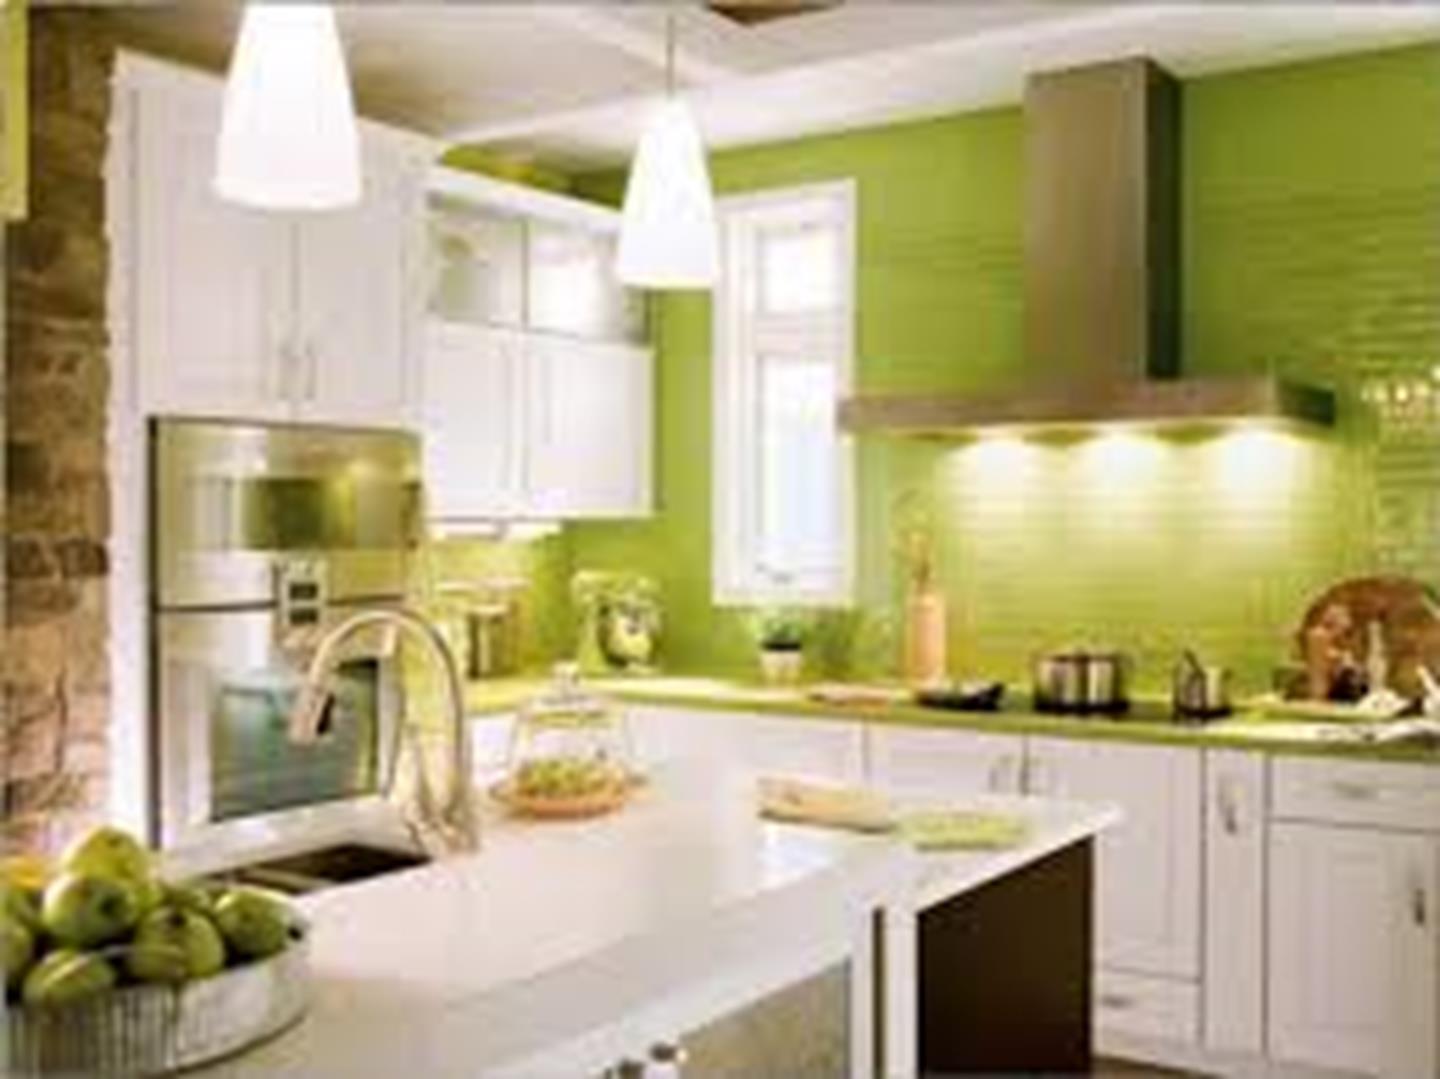 Keuken met groene accenten